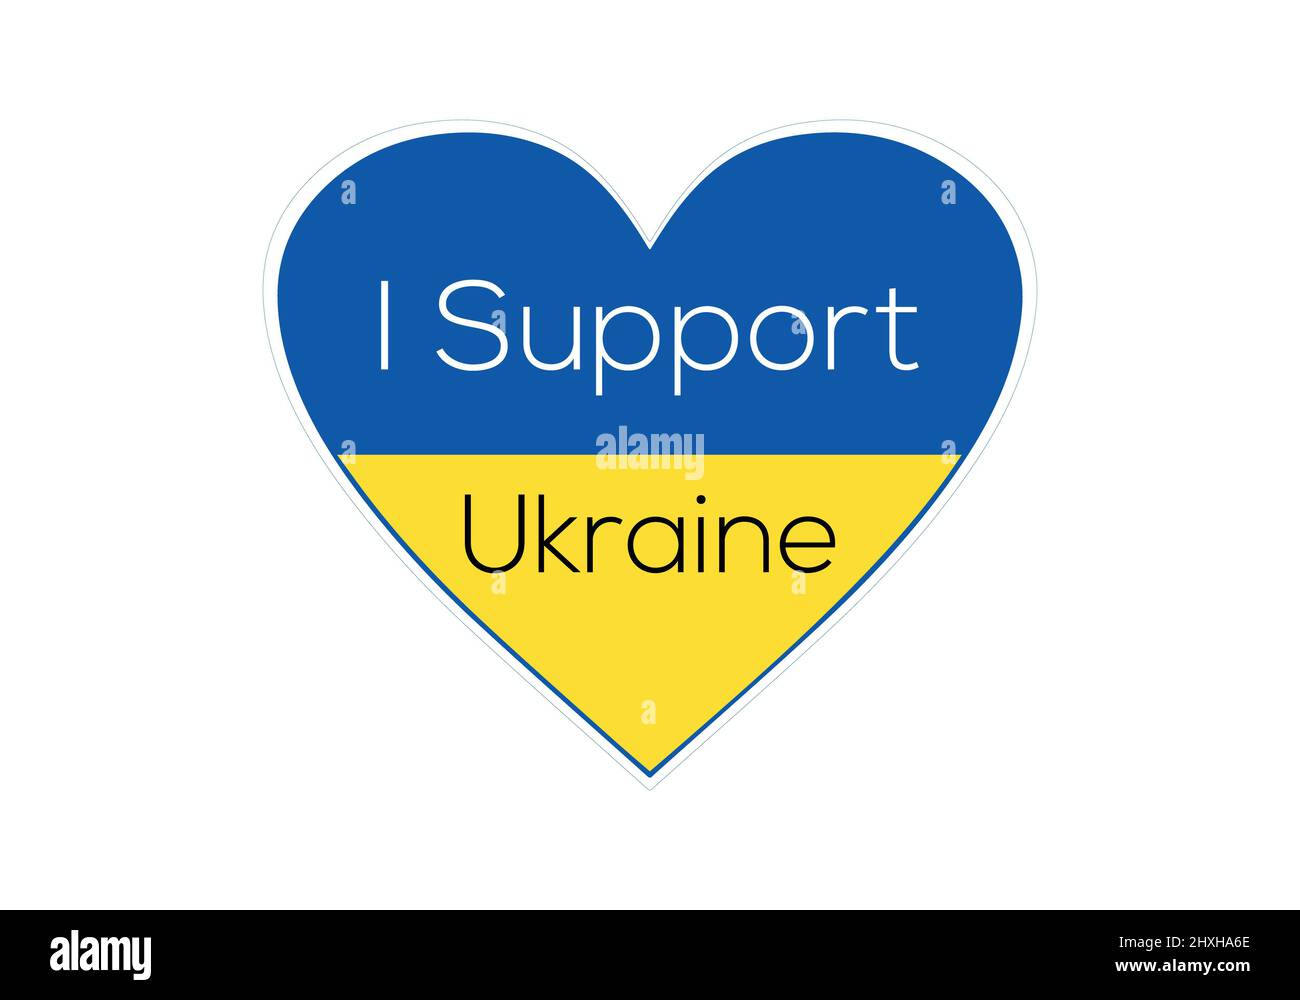 Nous sommes partisans de l'Ukraine. Nous aimons l'Ukraine et les peuples. Nous aimons et soutenons le peuple et le drapeau de l'Ukraine et le pays Banque D'Images